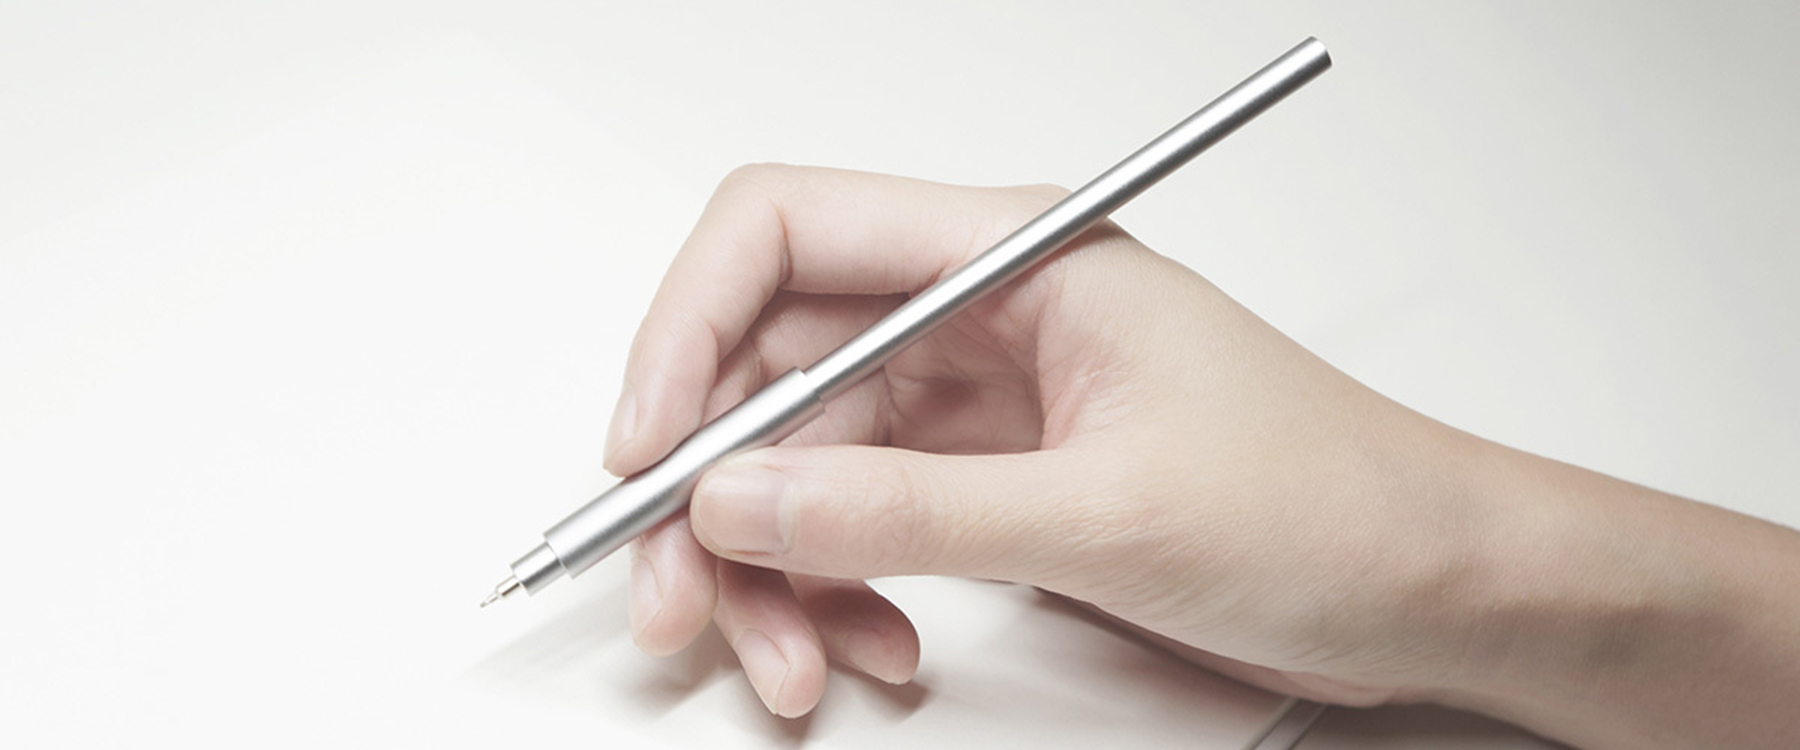 挑战极简主义极限的Pen Uno钢笔